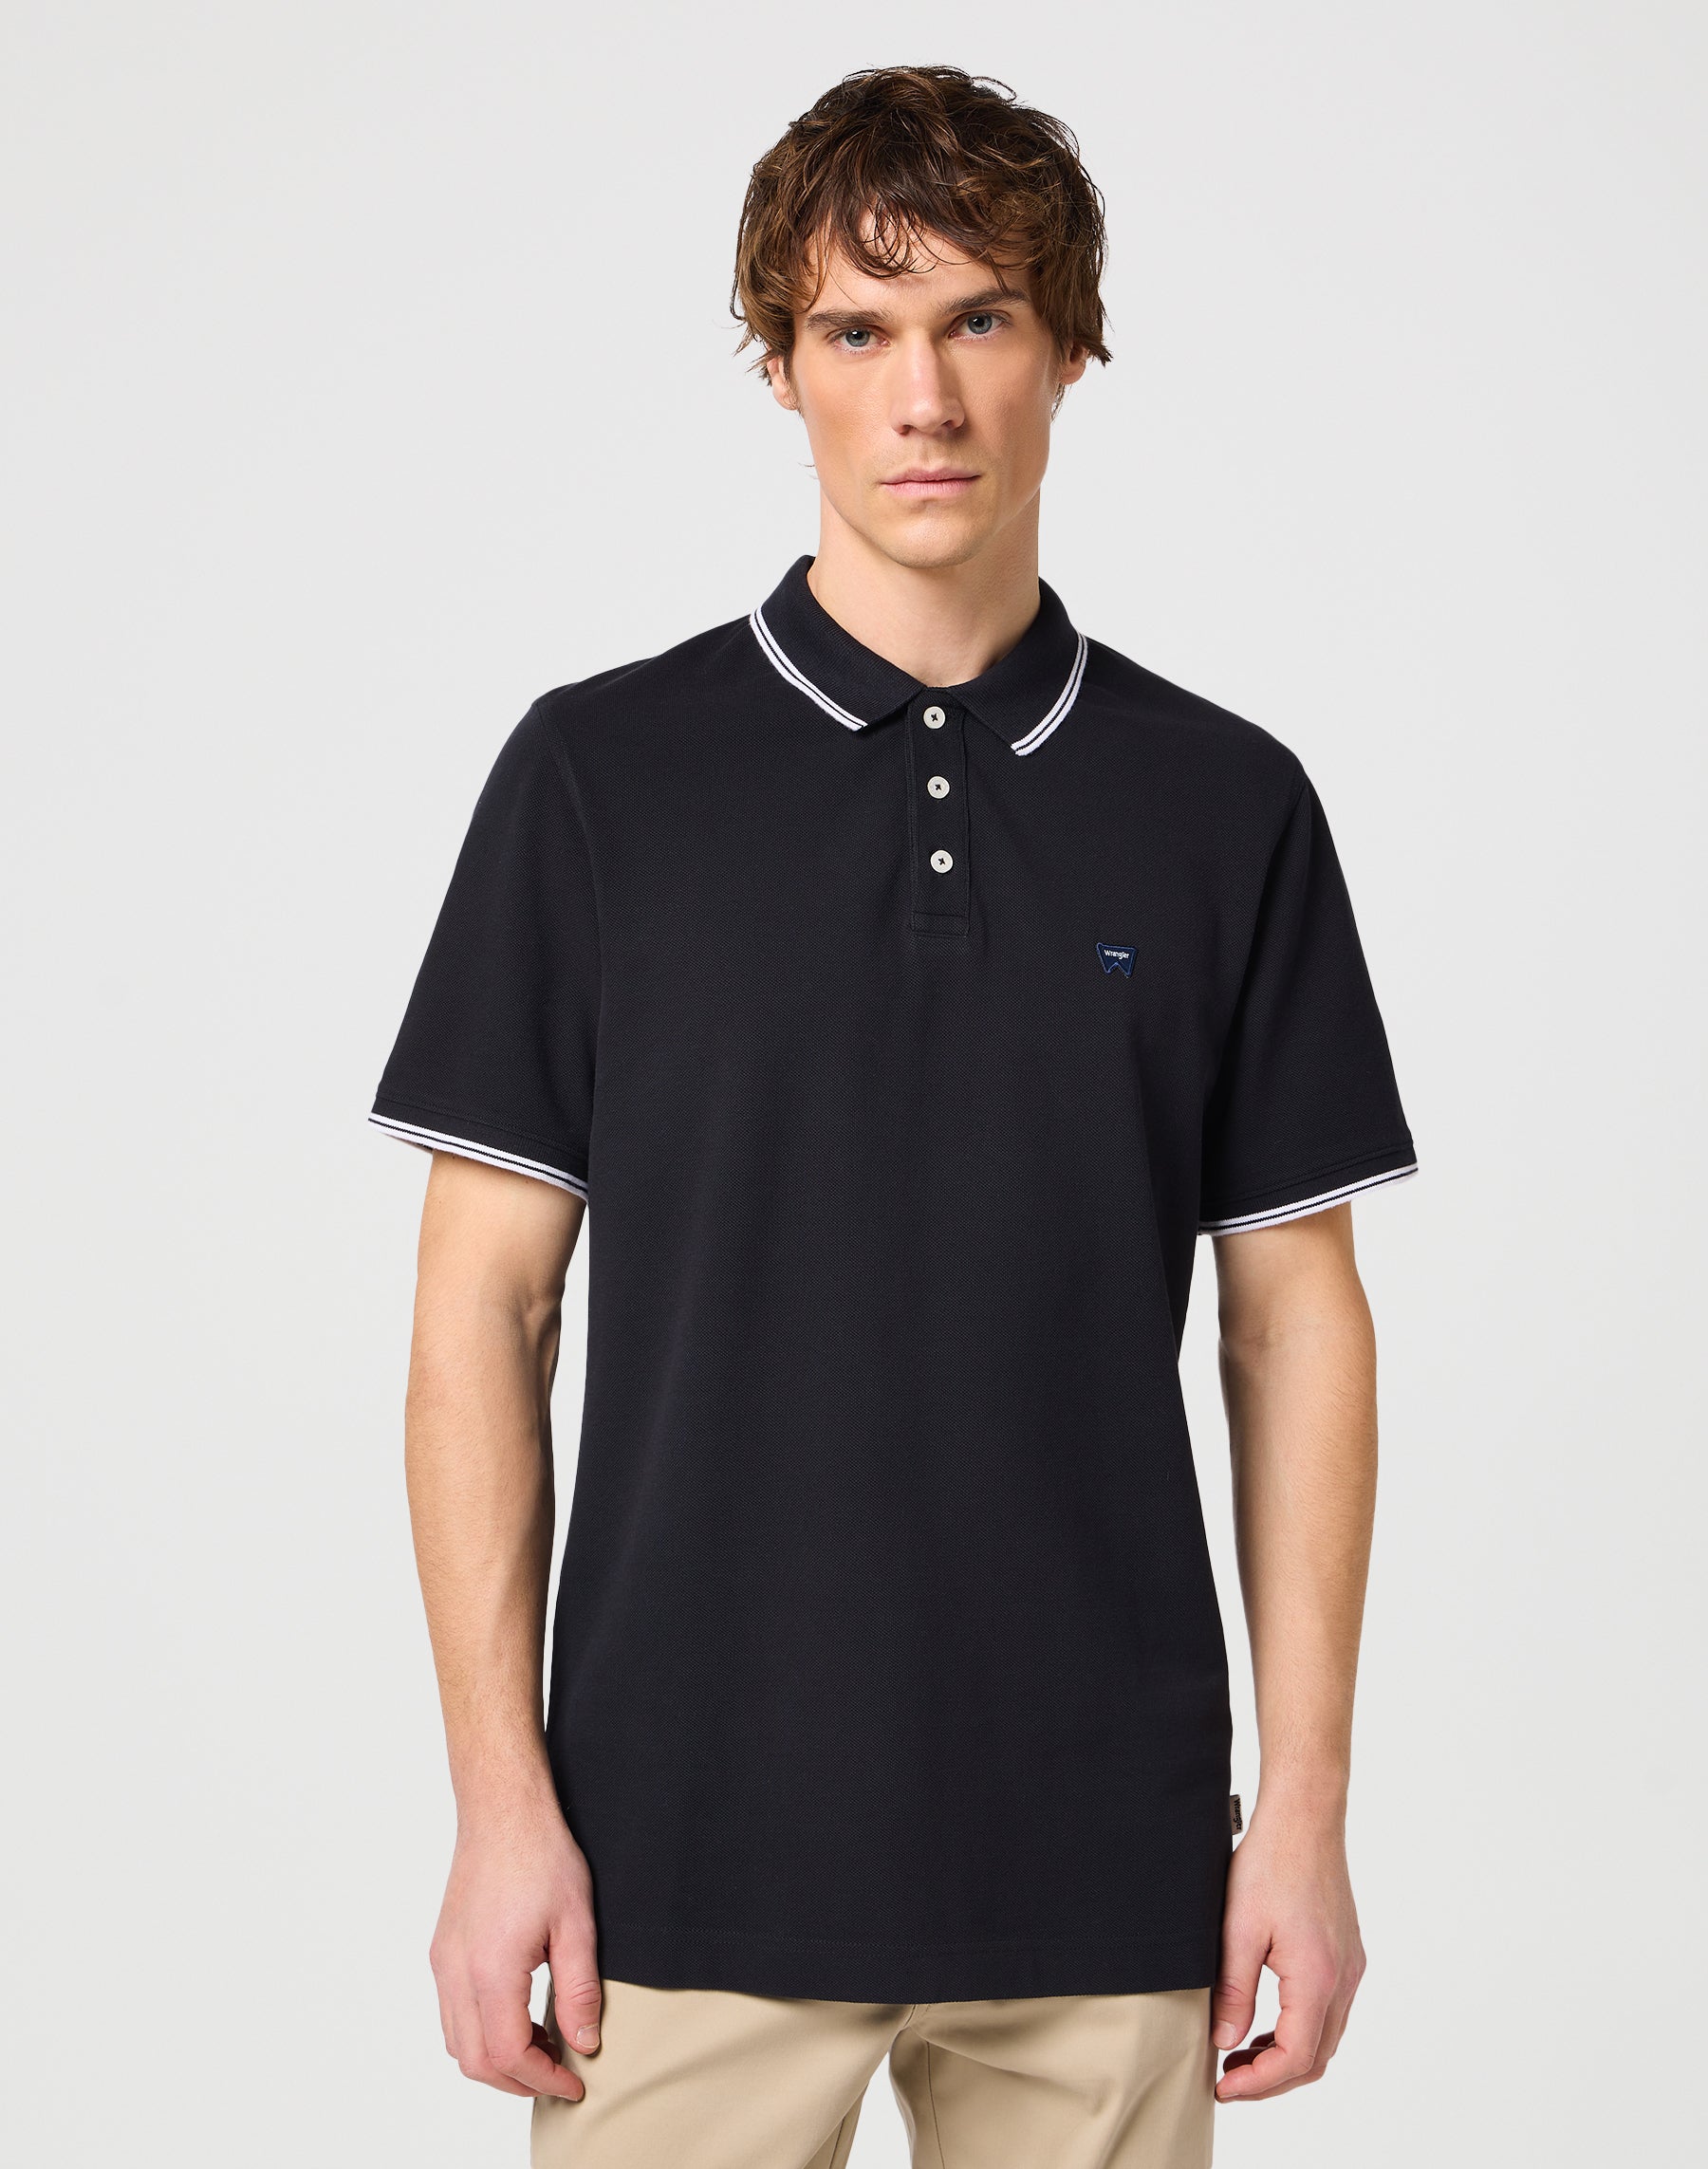 Polo Shirt in Black Polos Wrangler   